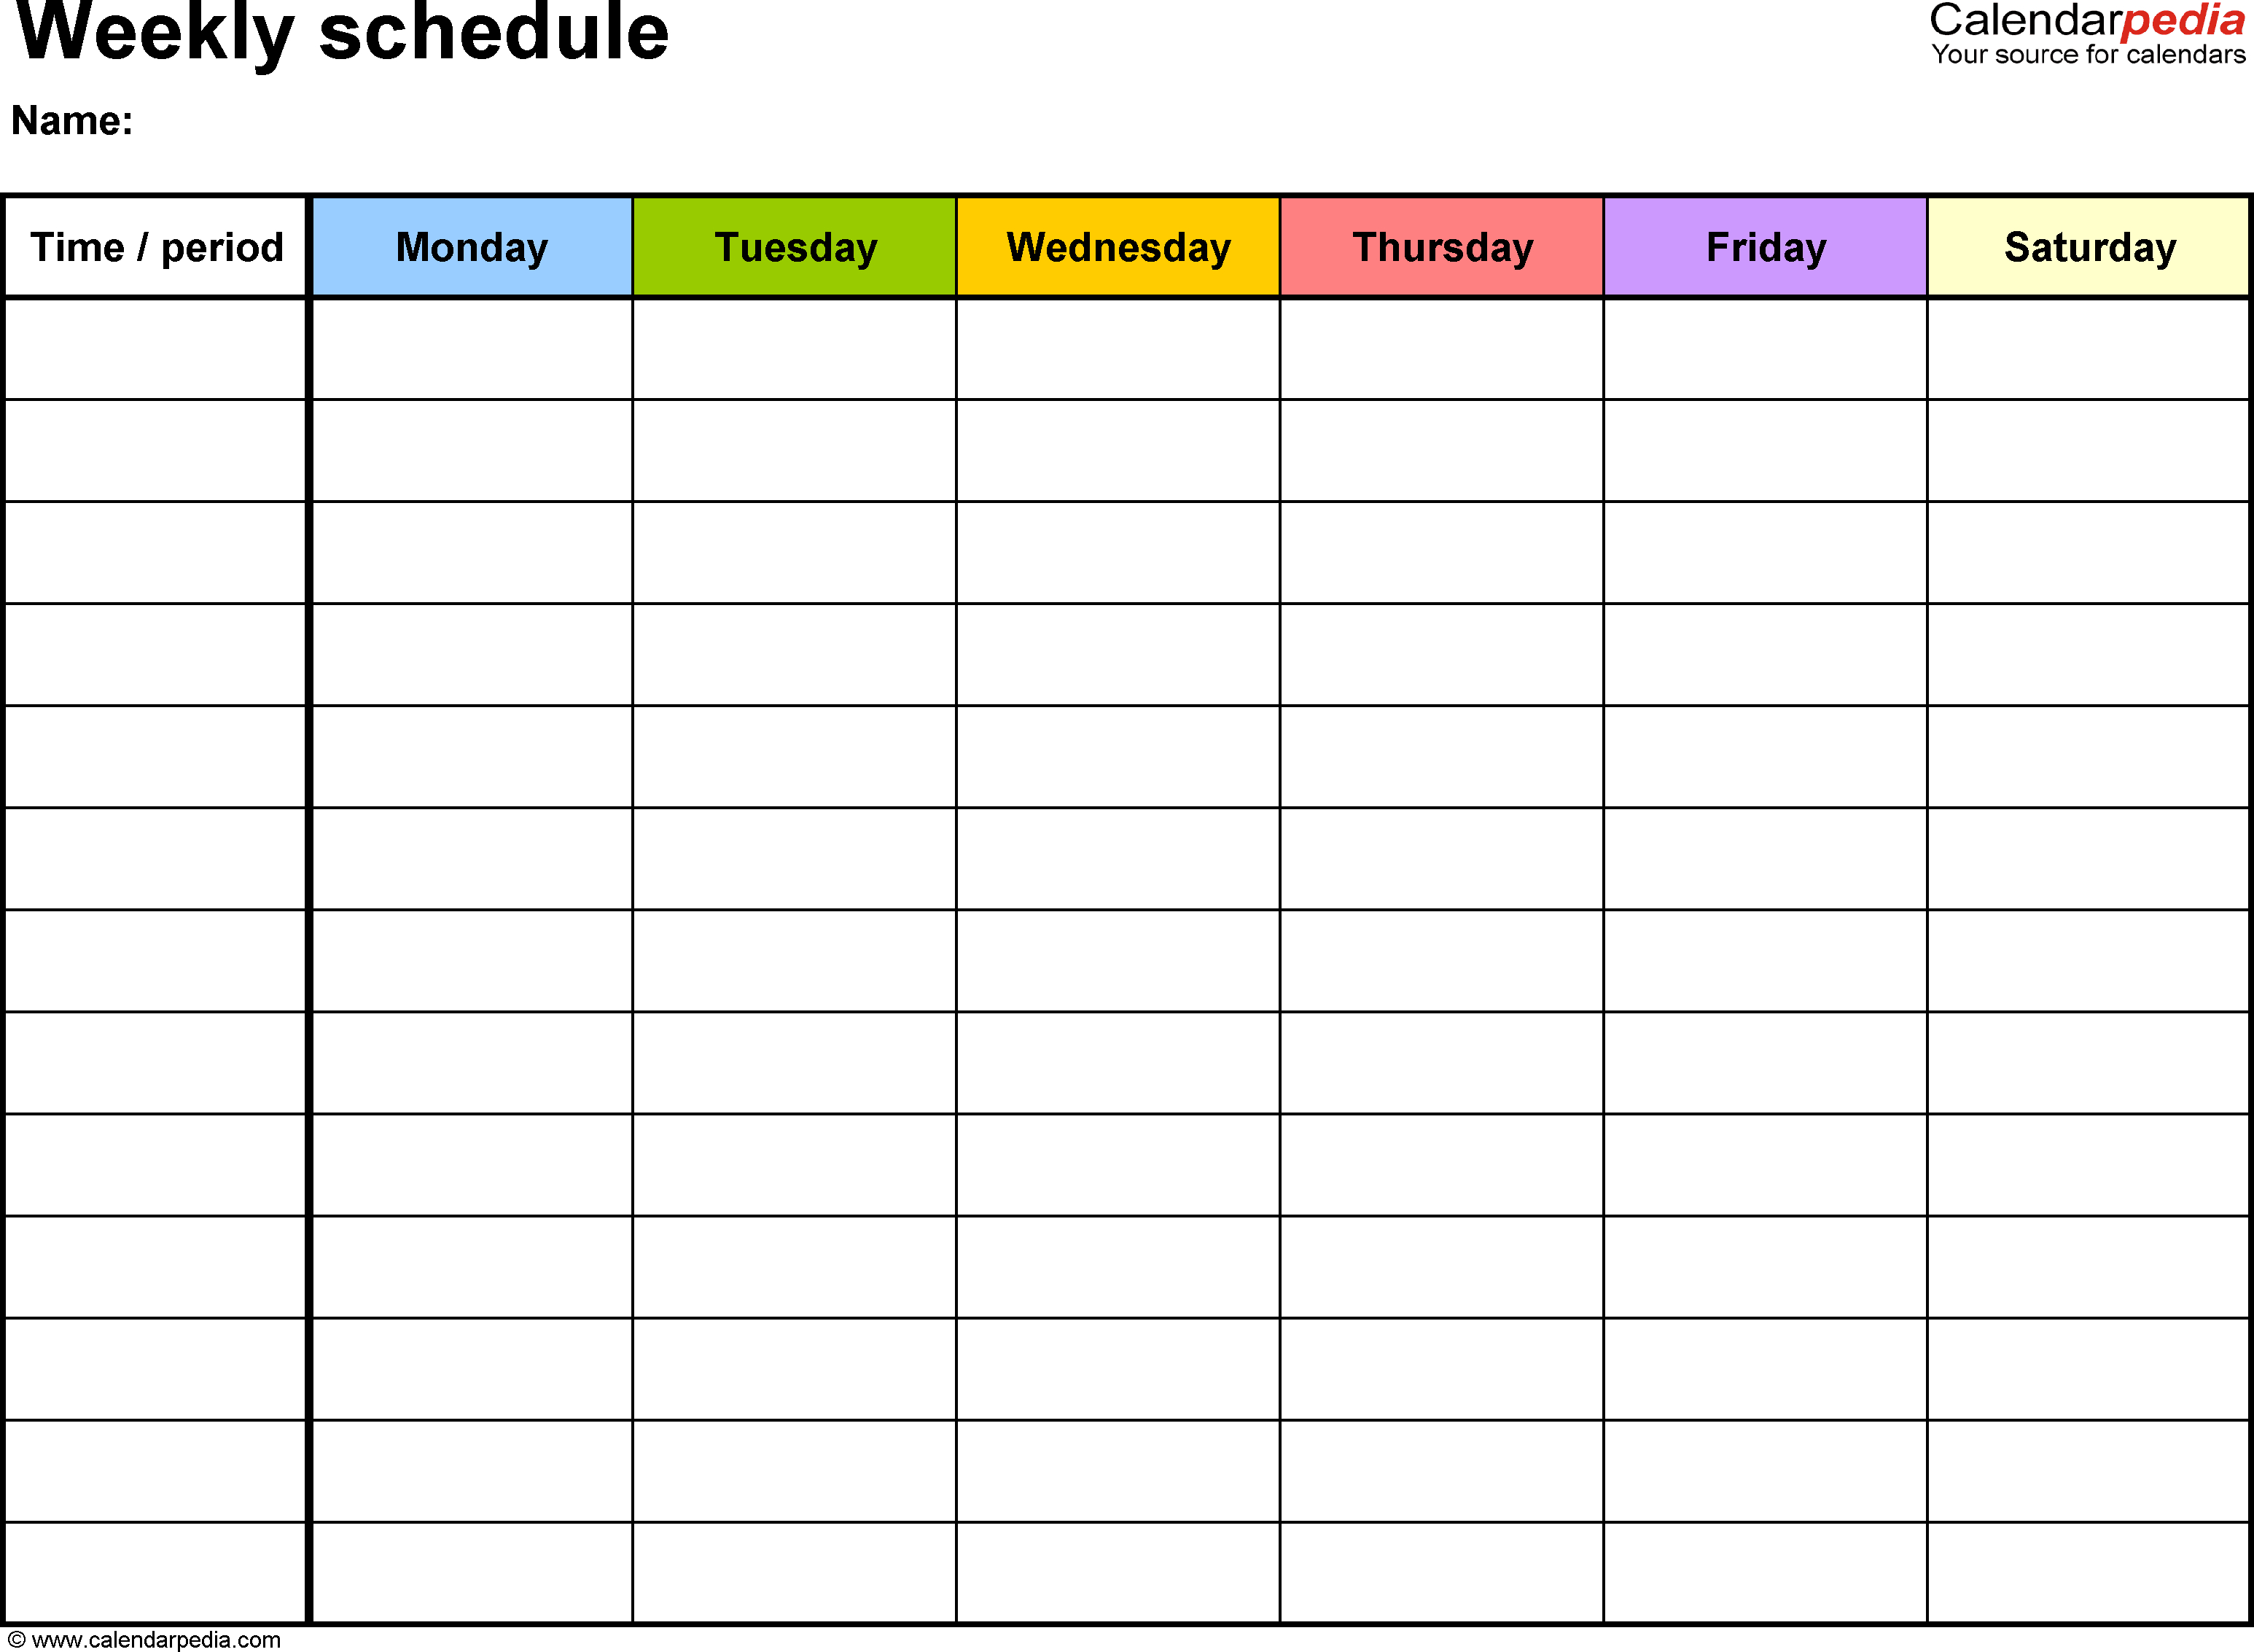 Weekly+Schedule+Template | Weekly Calendar Template intended for Weekly Calendar Template With Time Slots